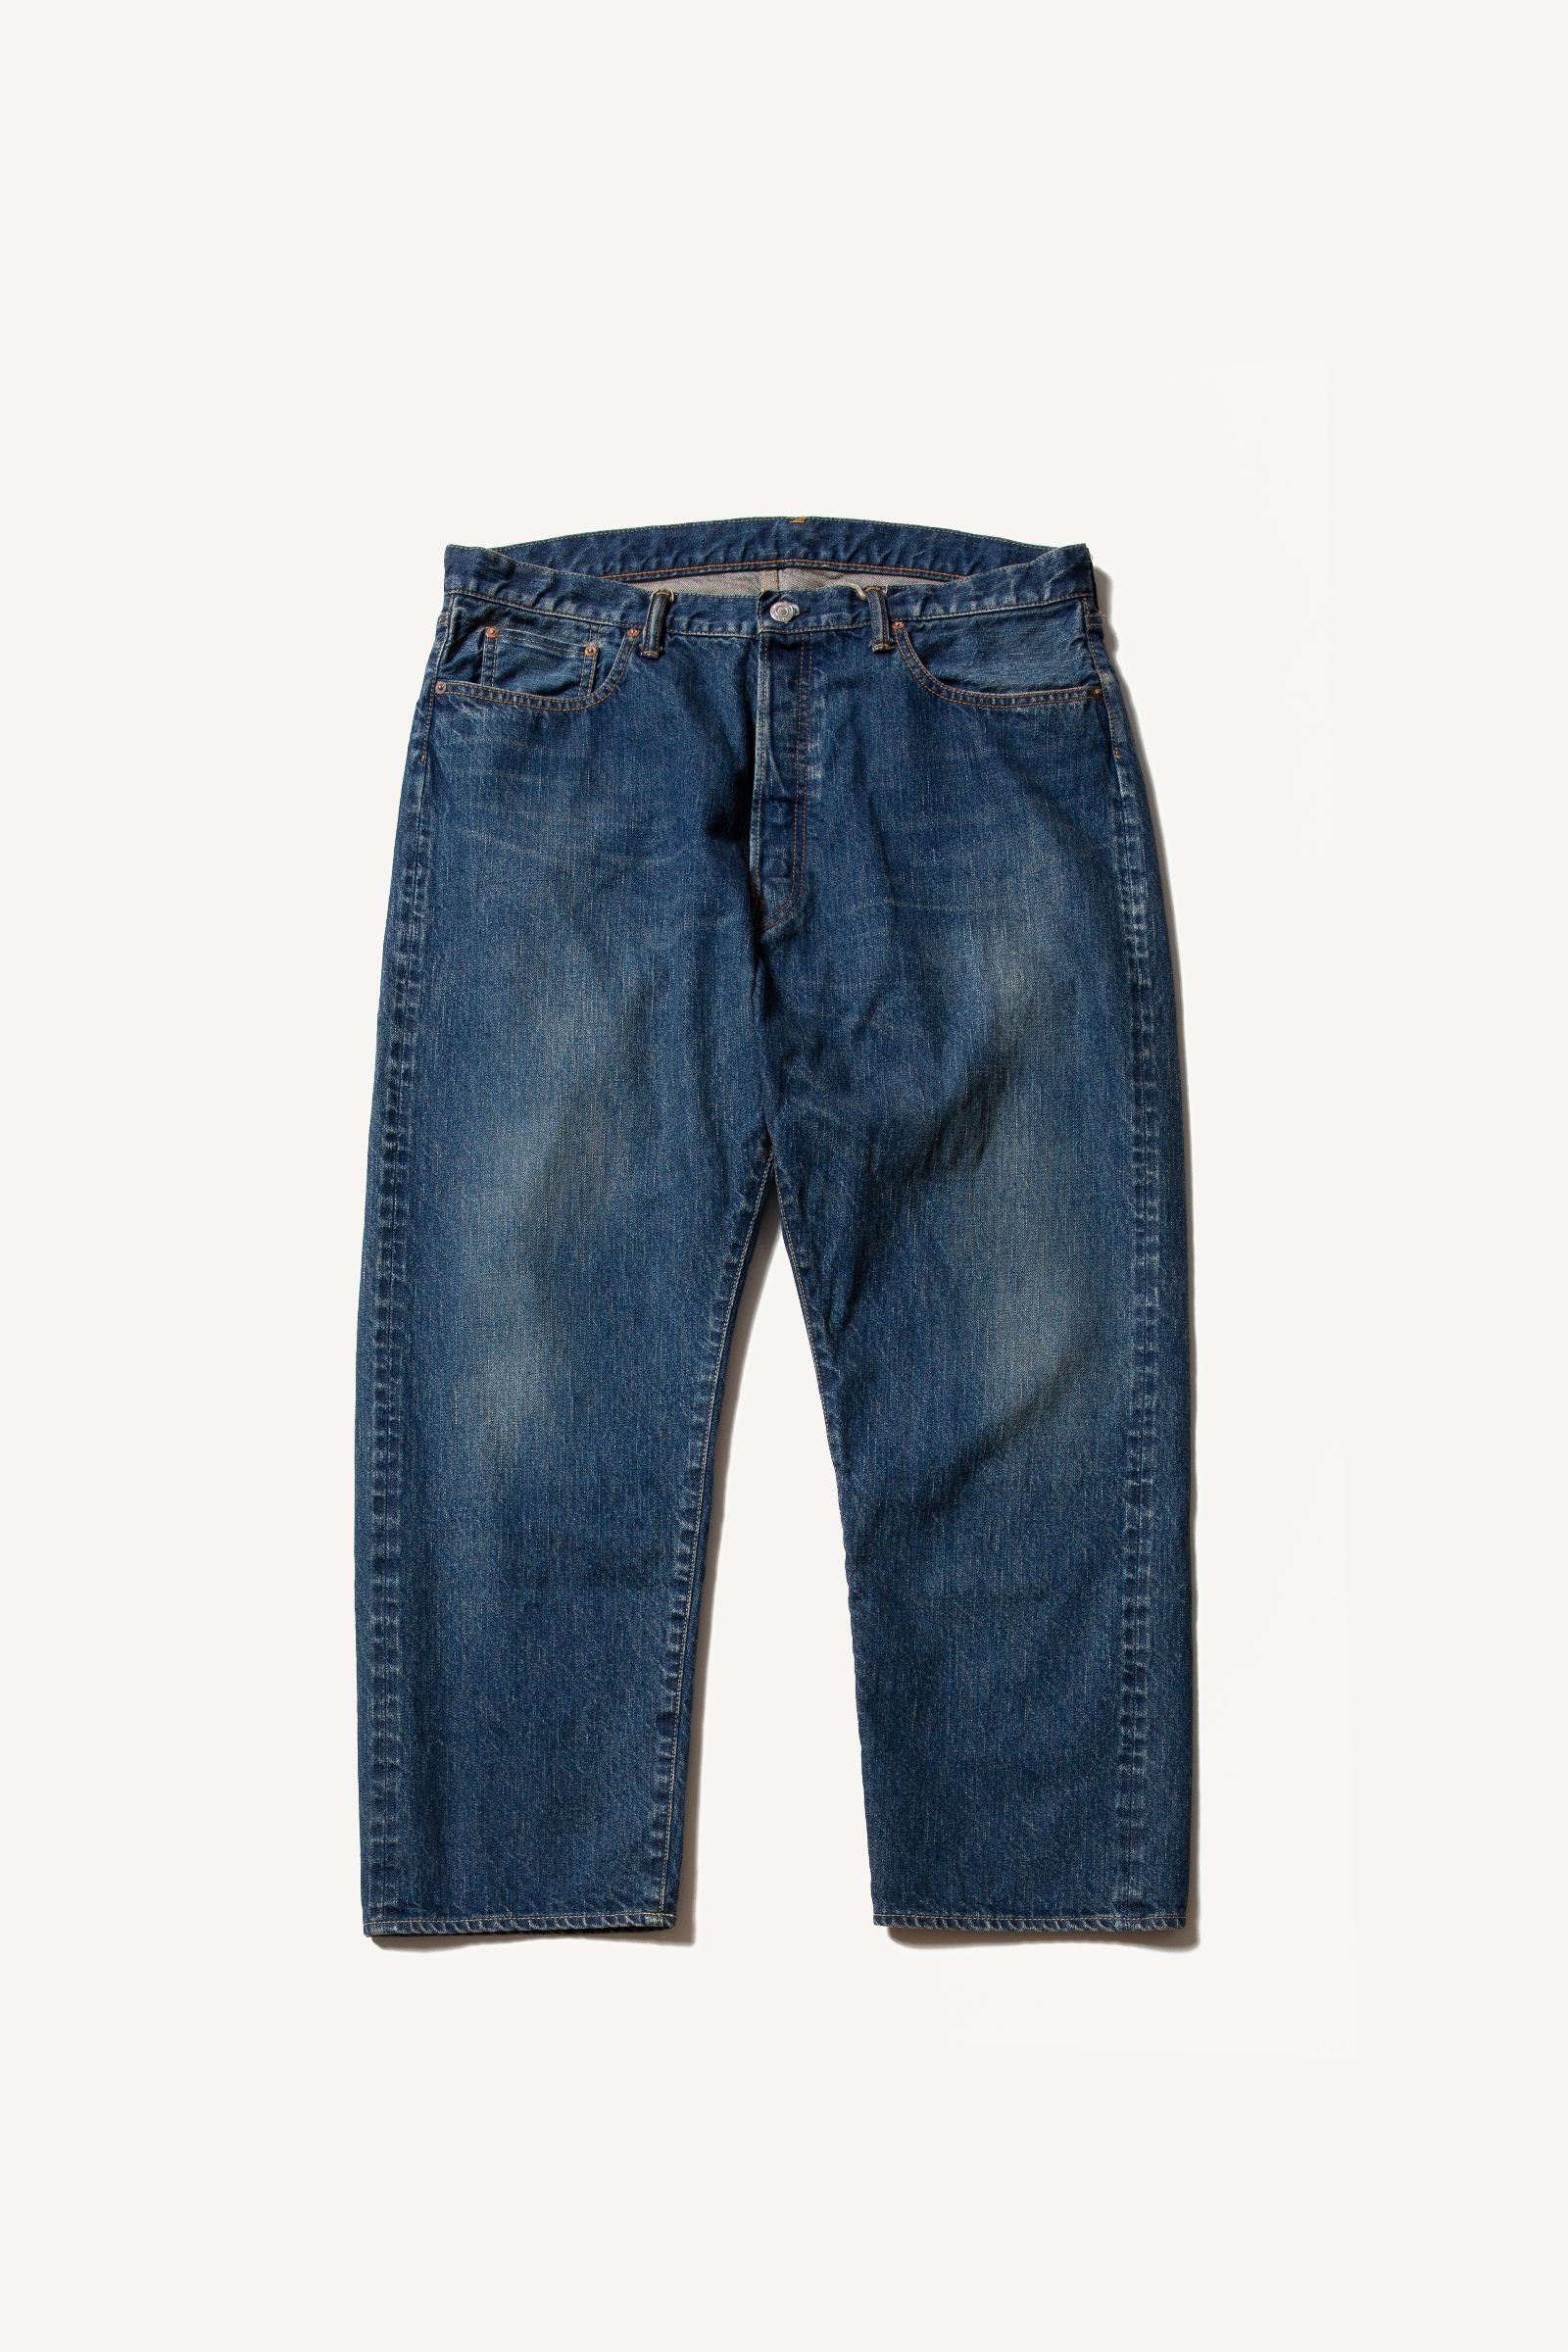 A.PRESSE - washed denim wide pants-indigo- 23ss | asterisk